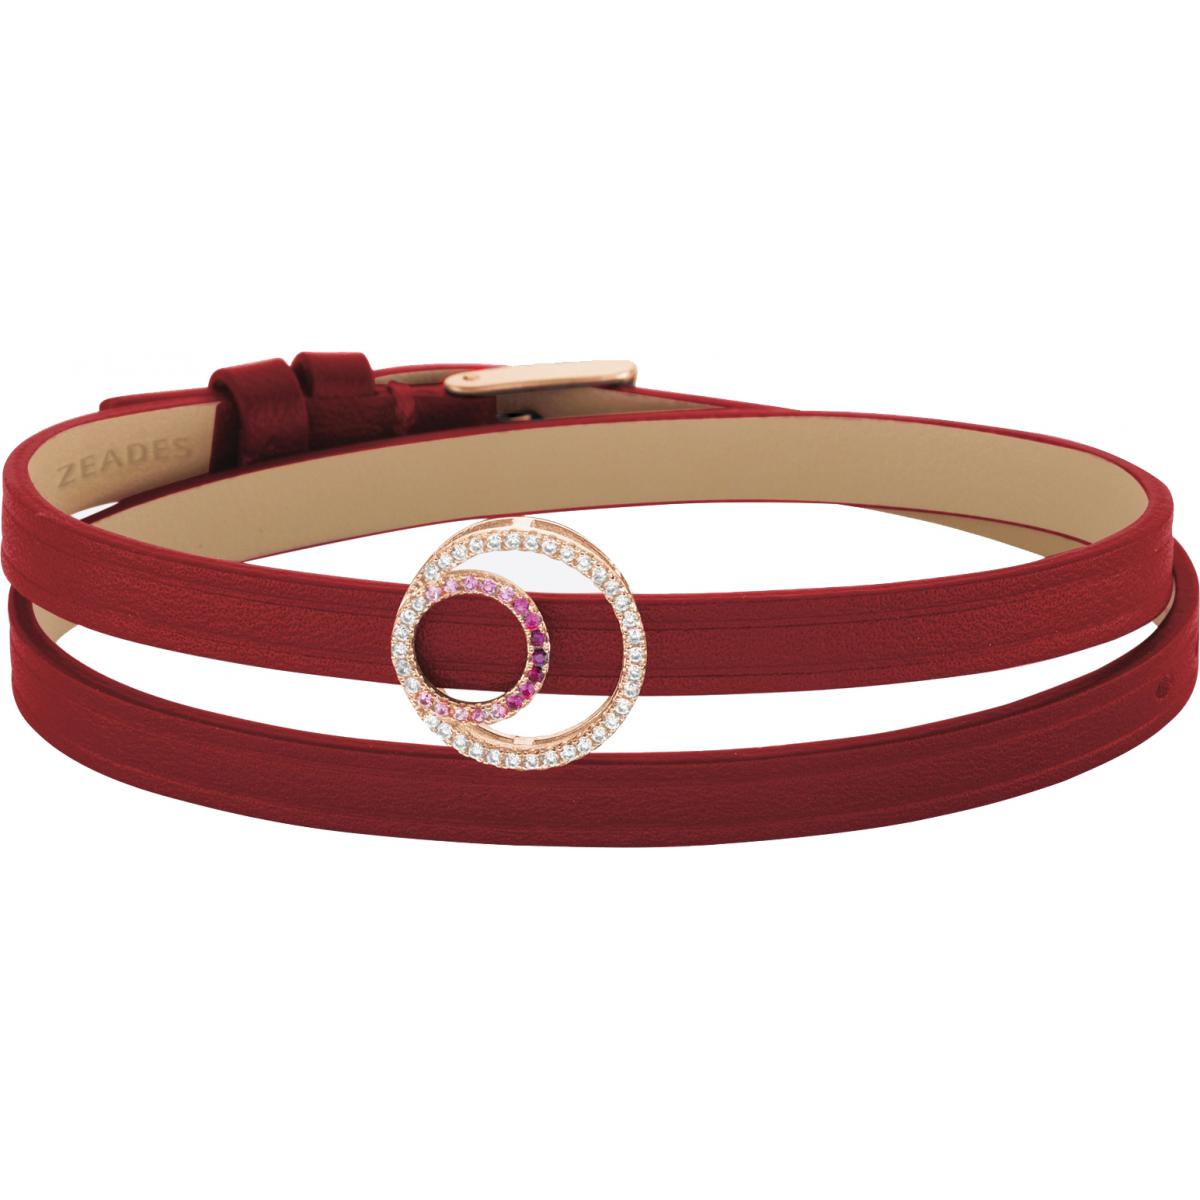 Bracelet Zeades Sbc01107 - Bracelet Or Rose Cuir Femme